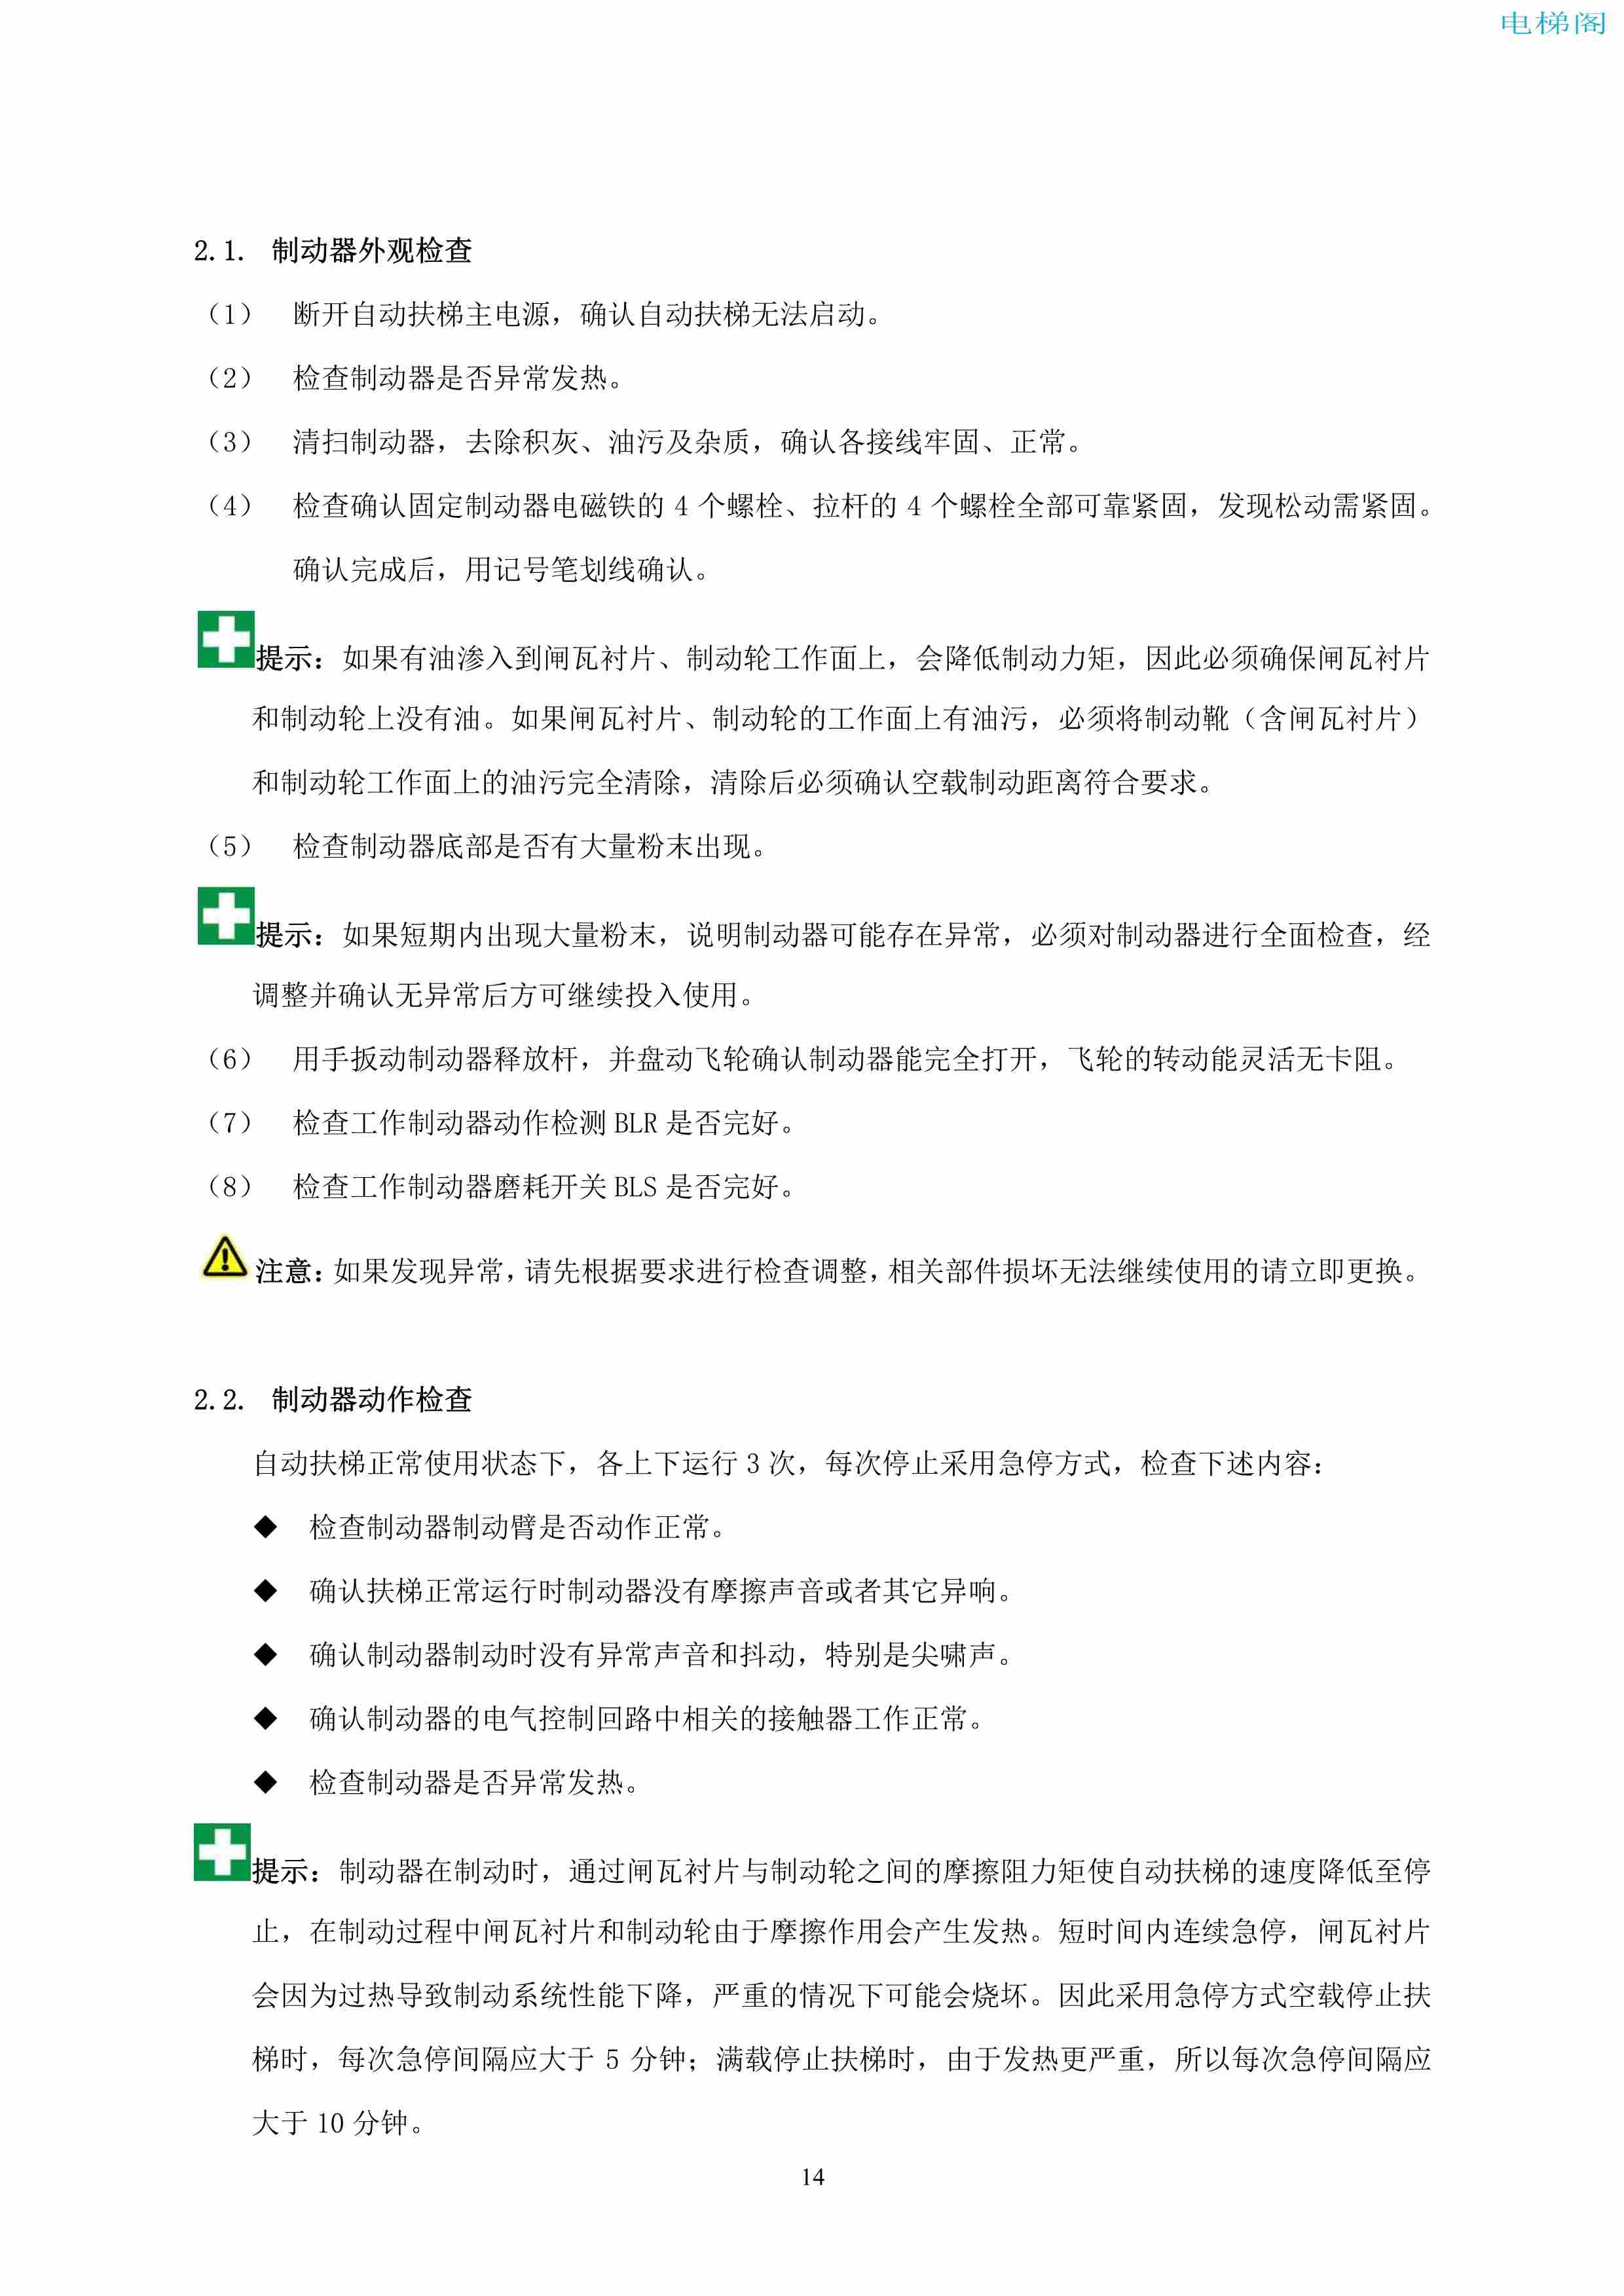 上海三菱电梯有限公司自动扶梯制动器维护作业要领汇编_15.jpg